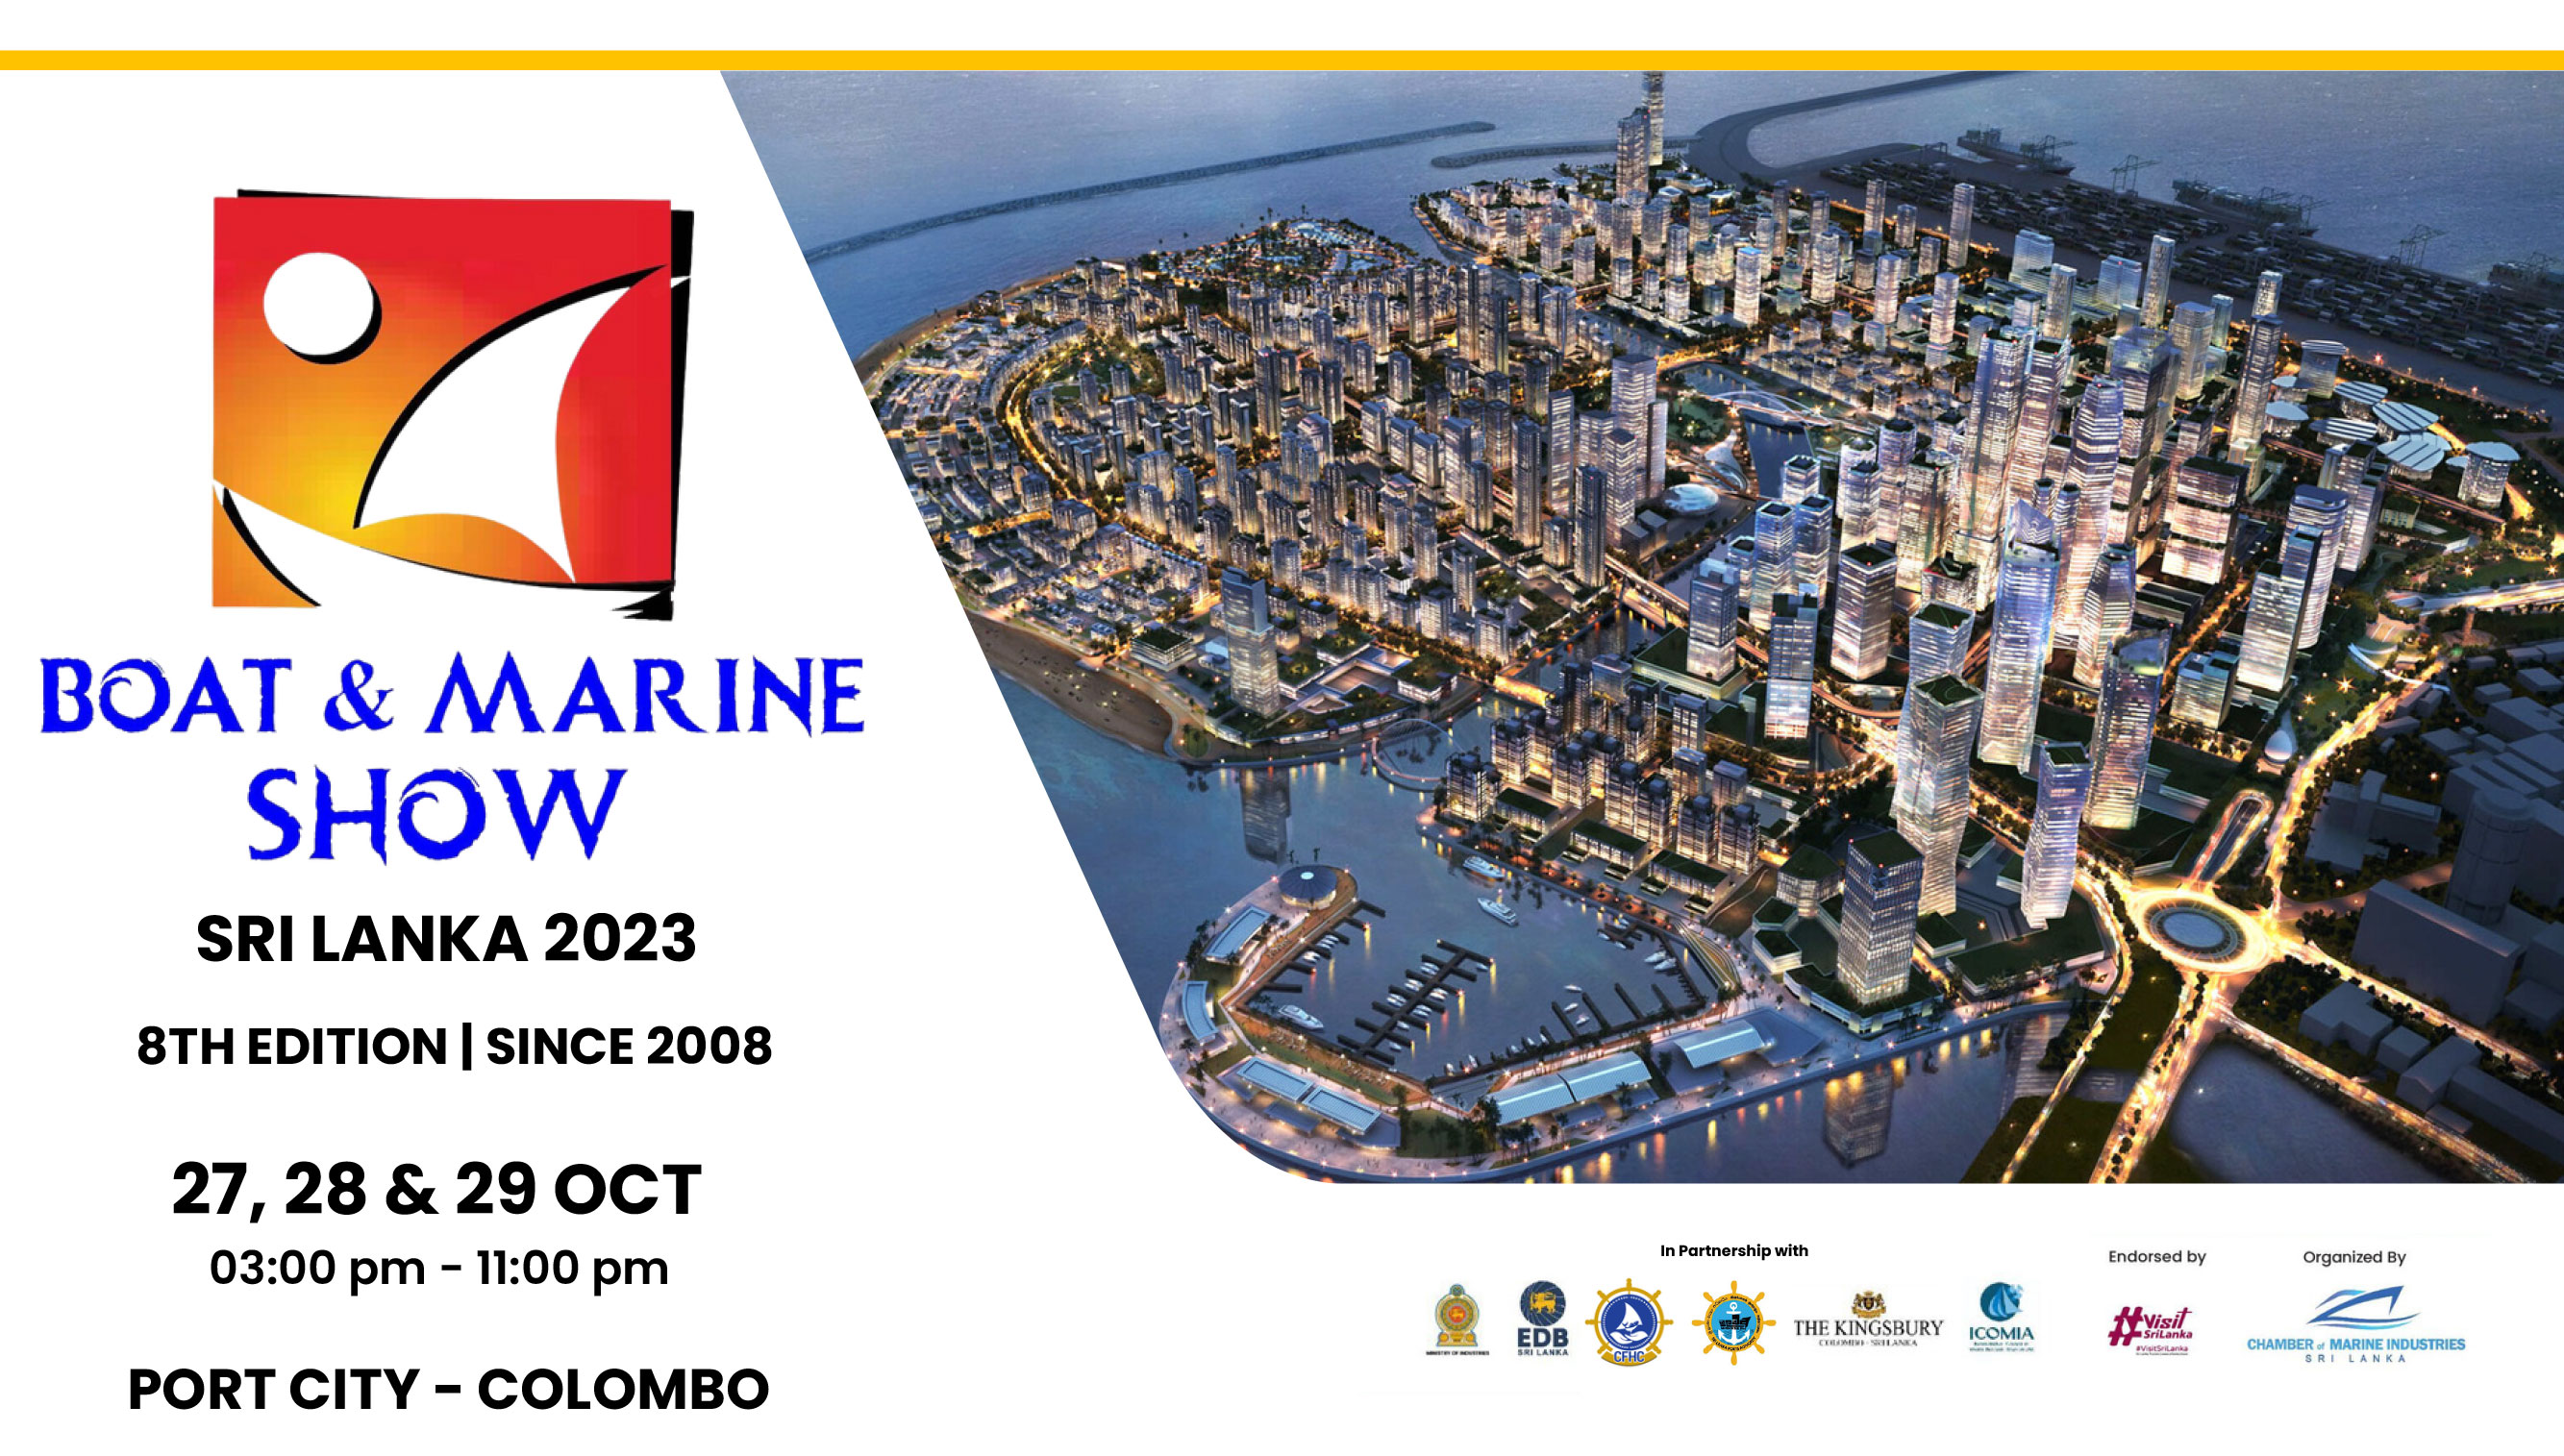 Boat & Marine Show Sri Lanka 2023 at Port City Marina